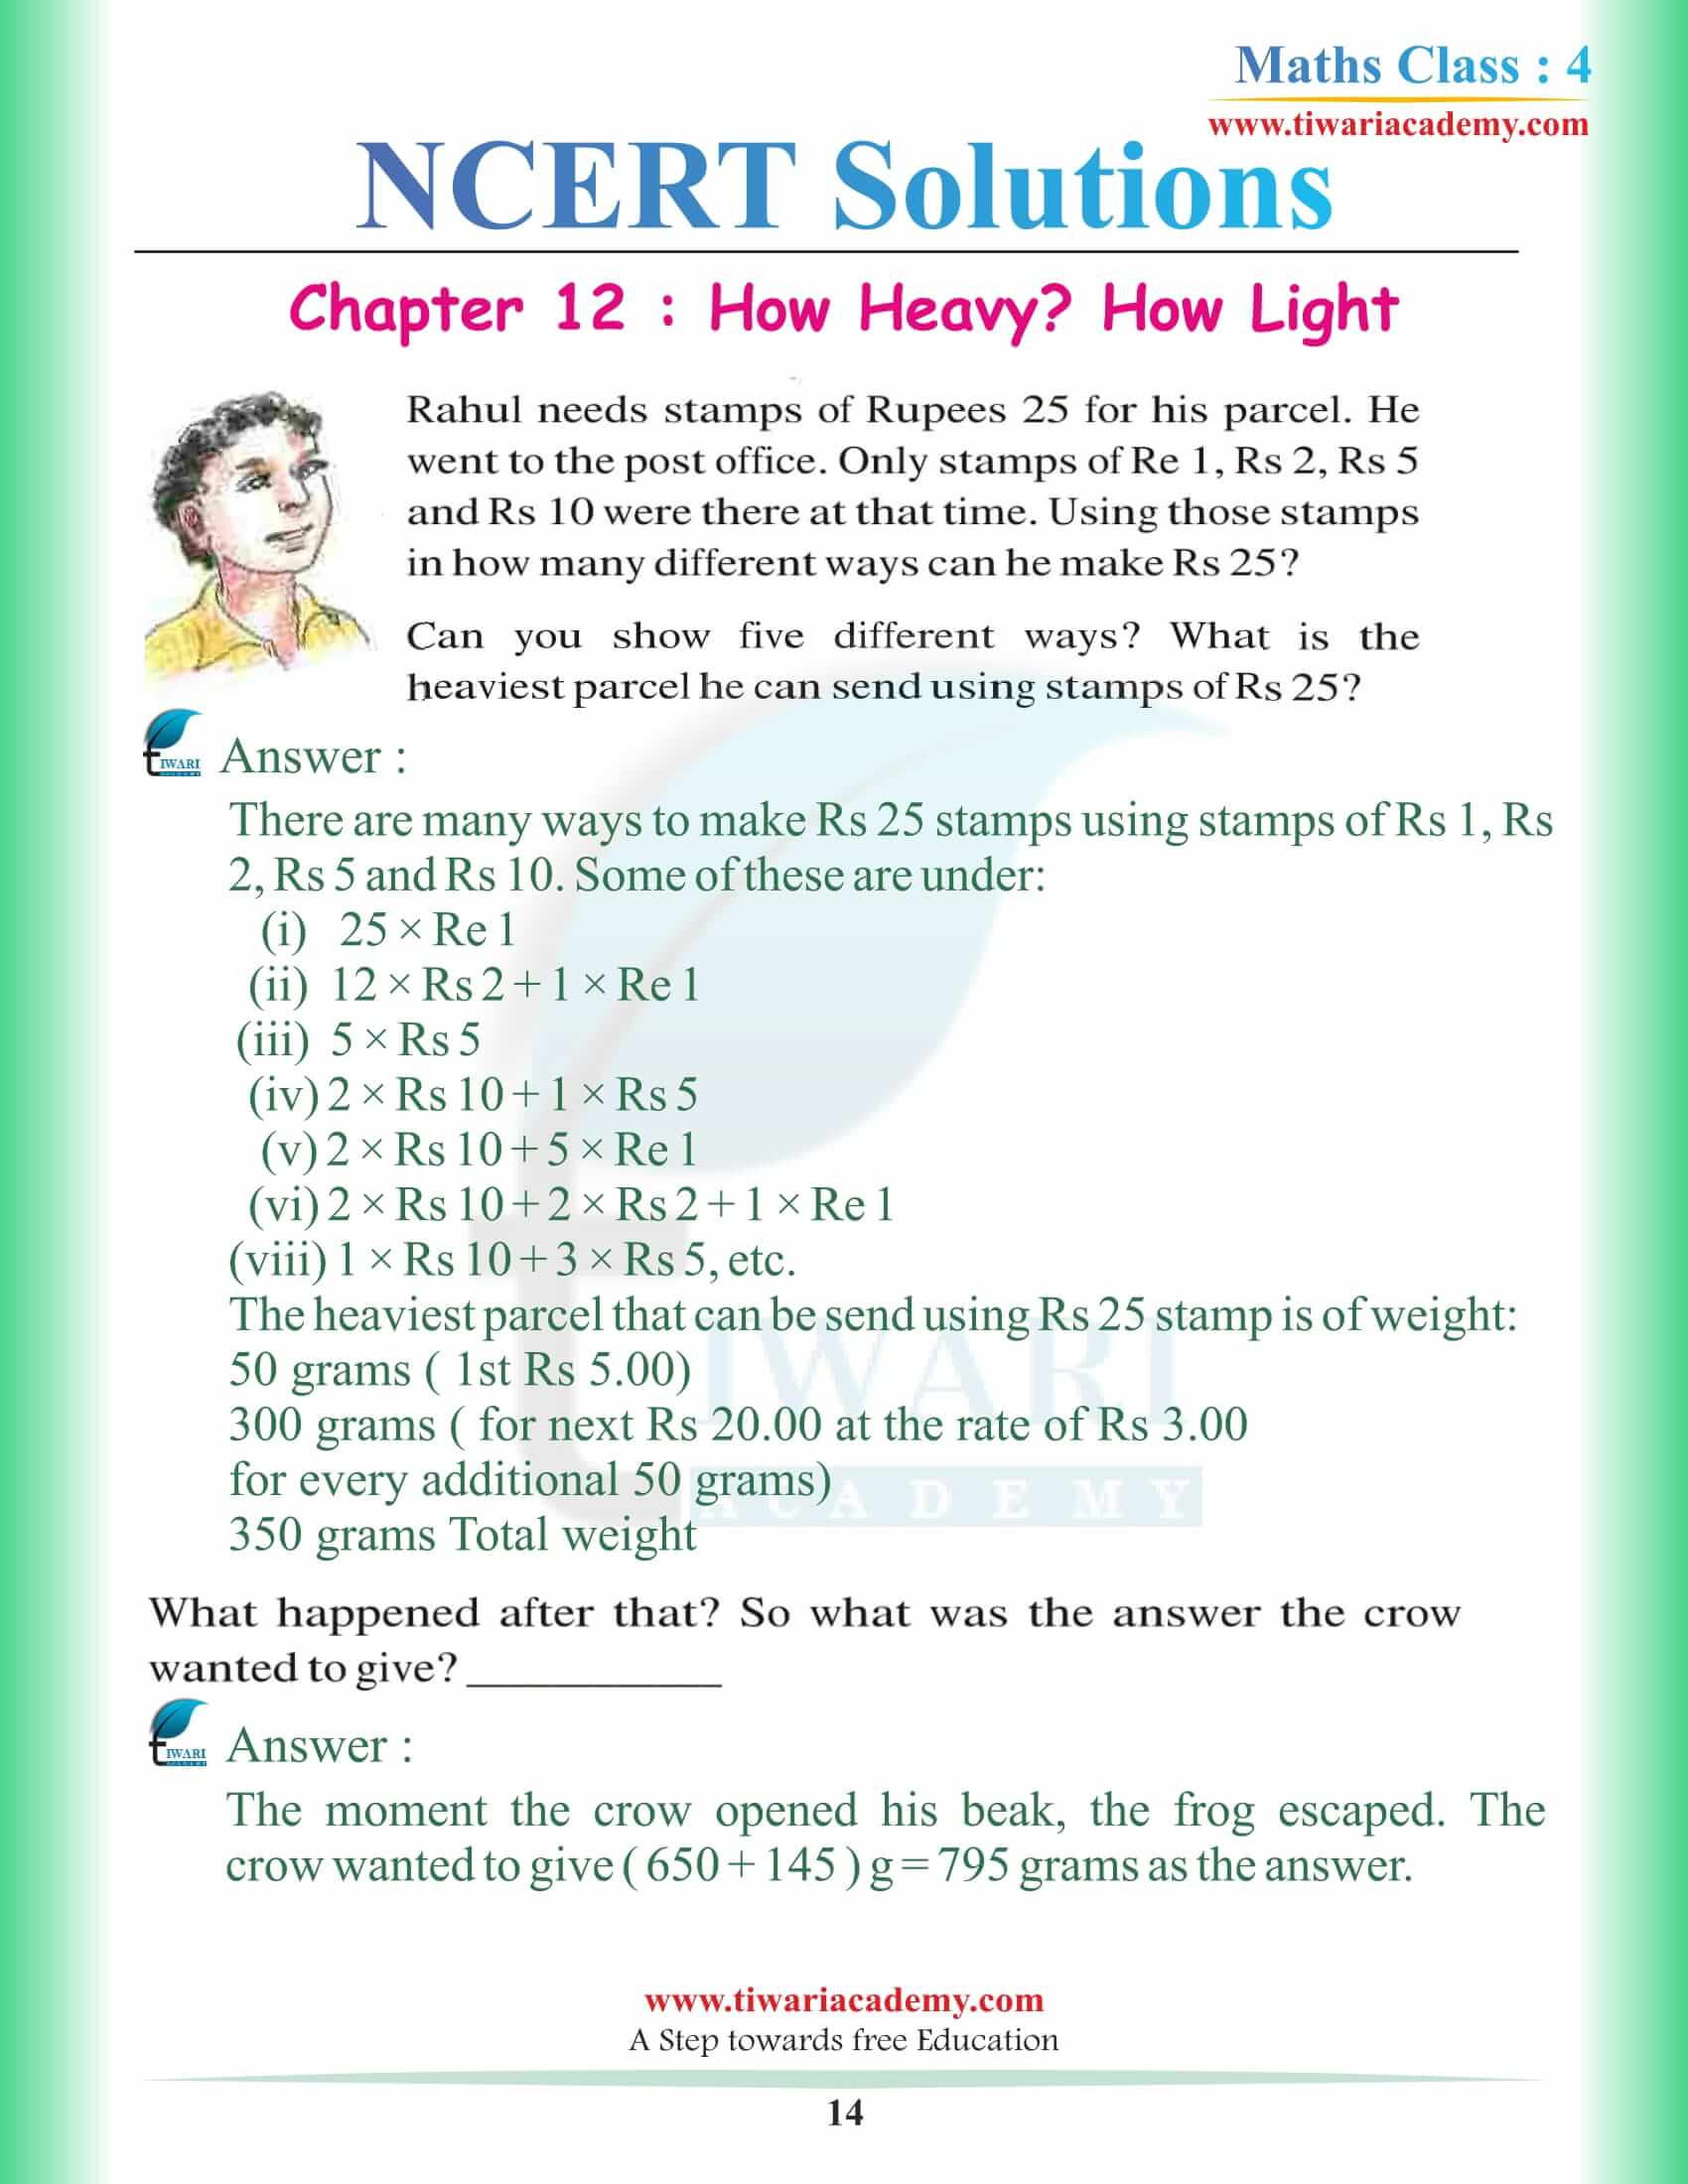 Class 4 Maths NCERT Chapter 12 Solutions English Medium